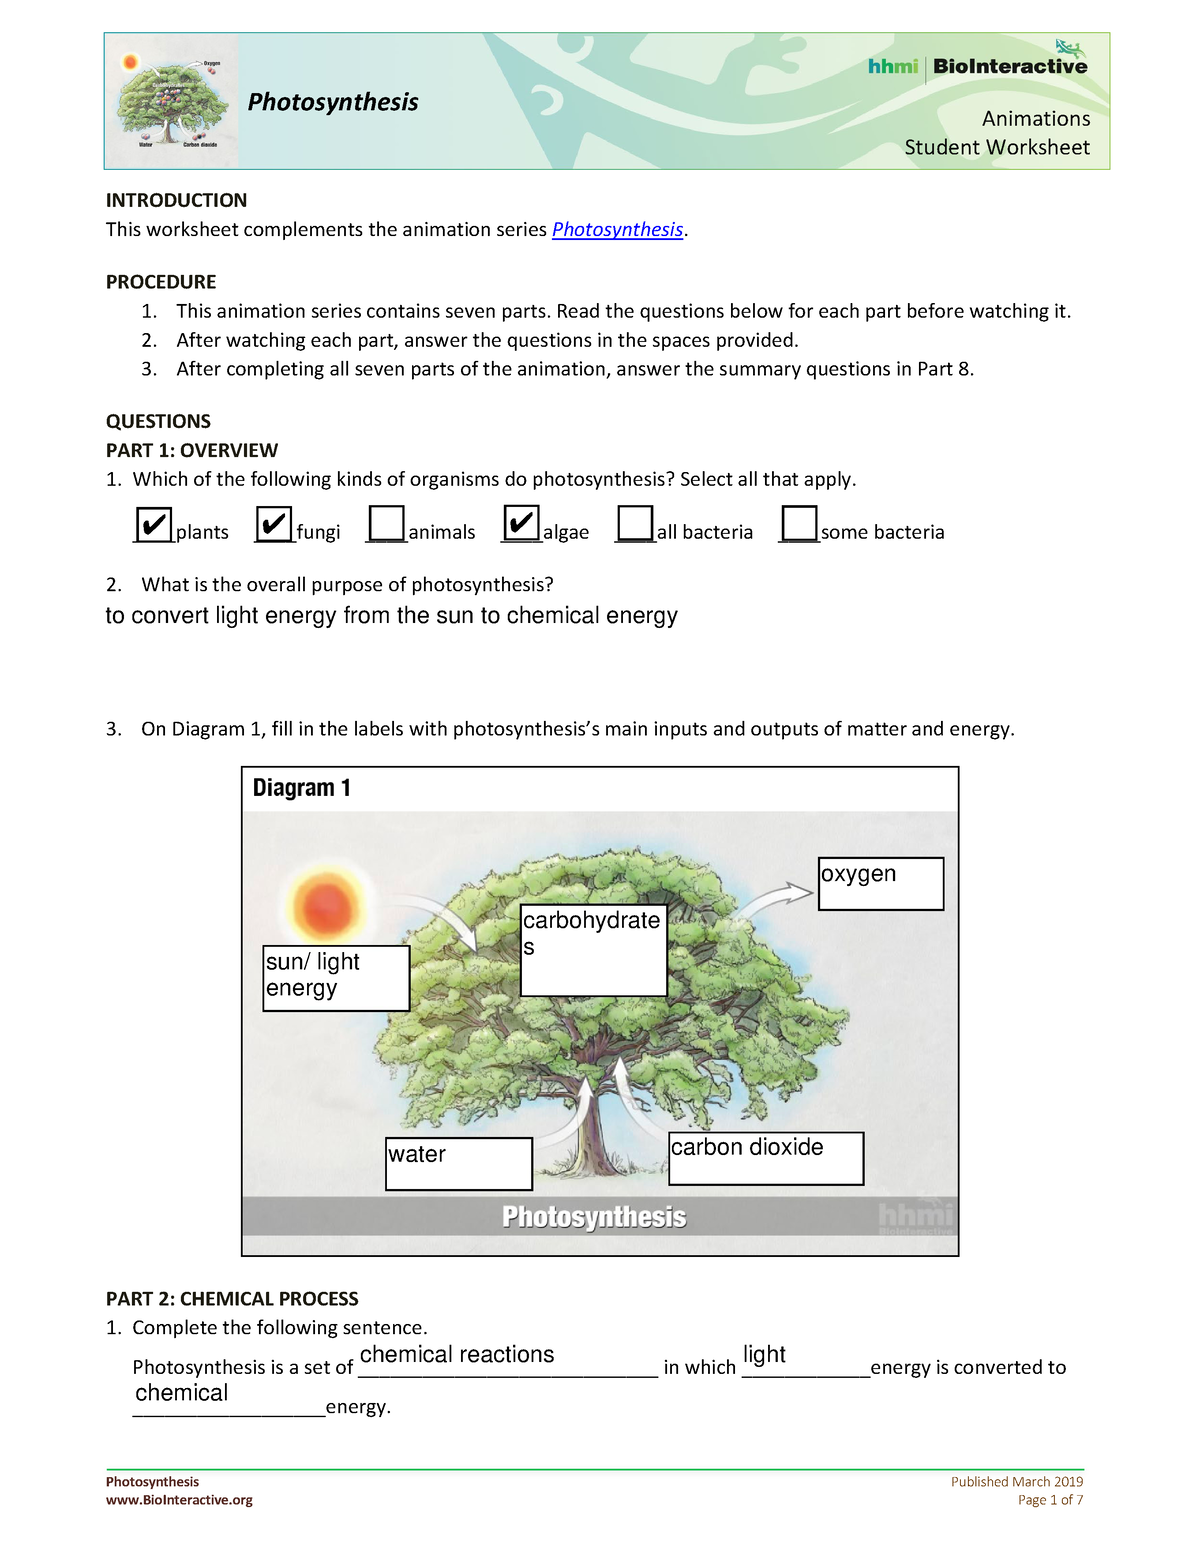 photosynthesis animation worksheet answer key